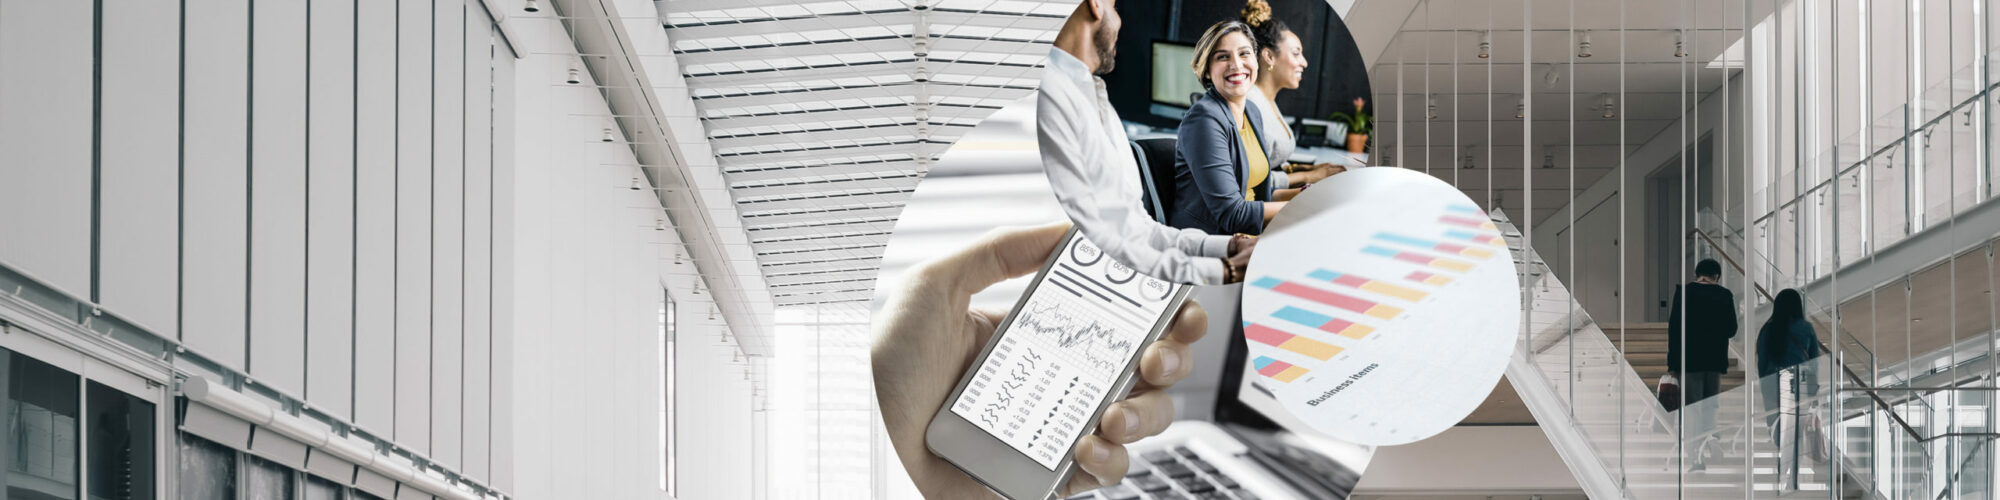 Bild von lachenden Personen, darunter ein Smartphone Screen mit verschiedenen Diagrammen und Grafiken; SAP Analytics